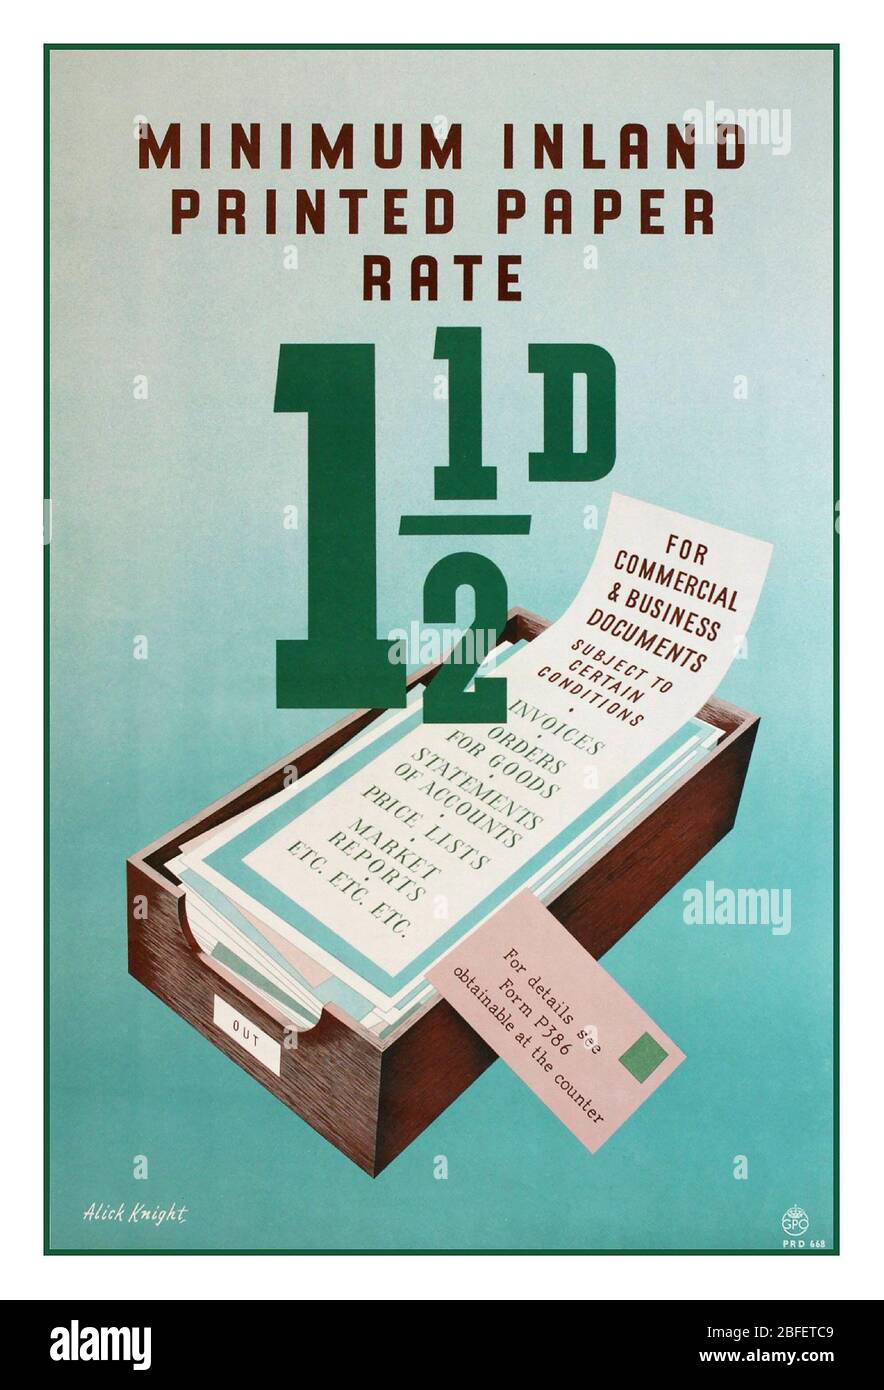 TARIFS POSTAUX UK Vintage archive information GPO Poster 1950 Post postal Postage Inland taux de papier imprimé 1 1/2 d pour les documents commerciaux et d'affaires Banque D'Images